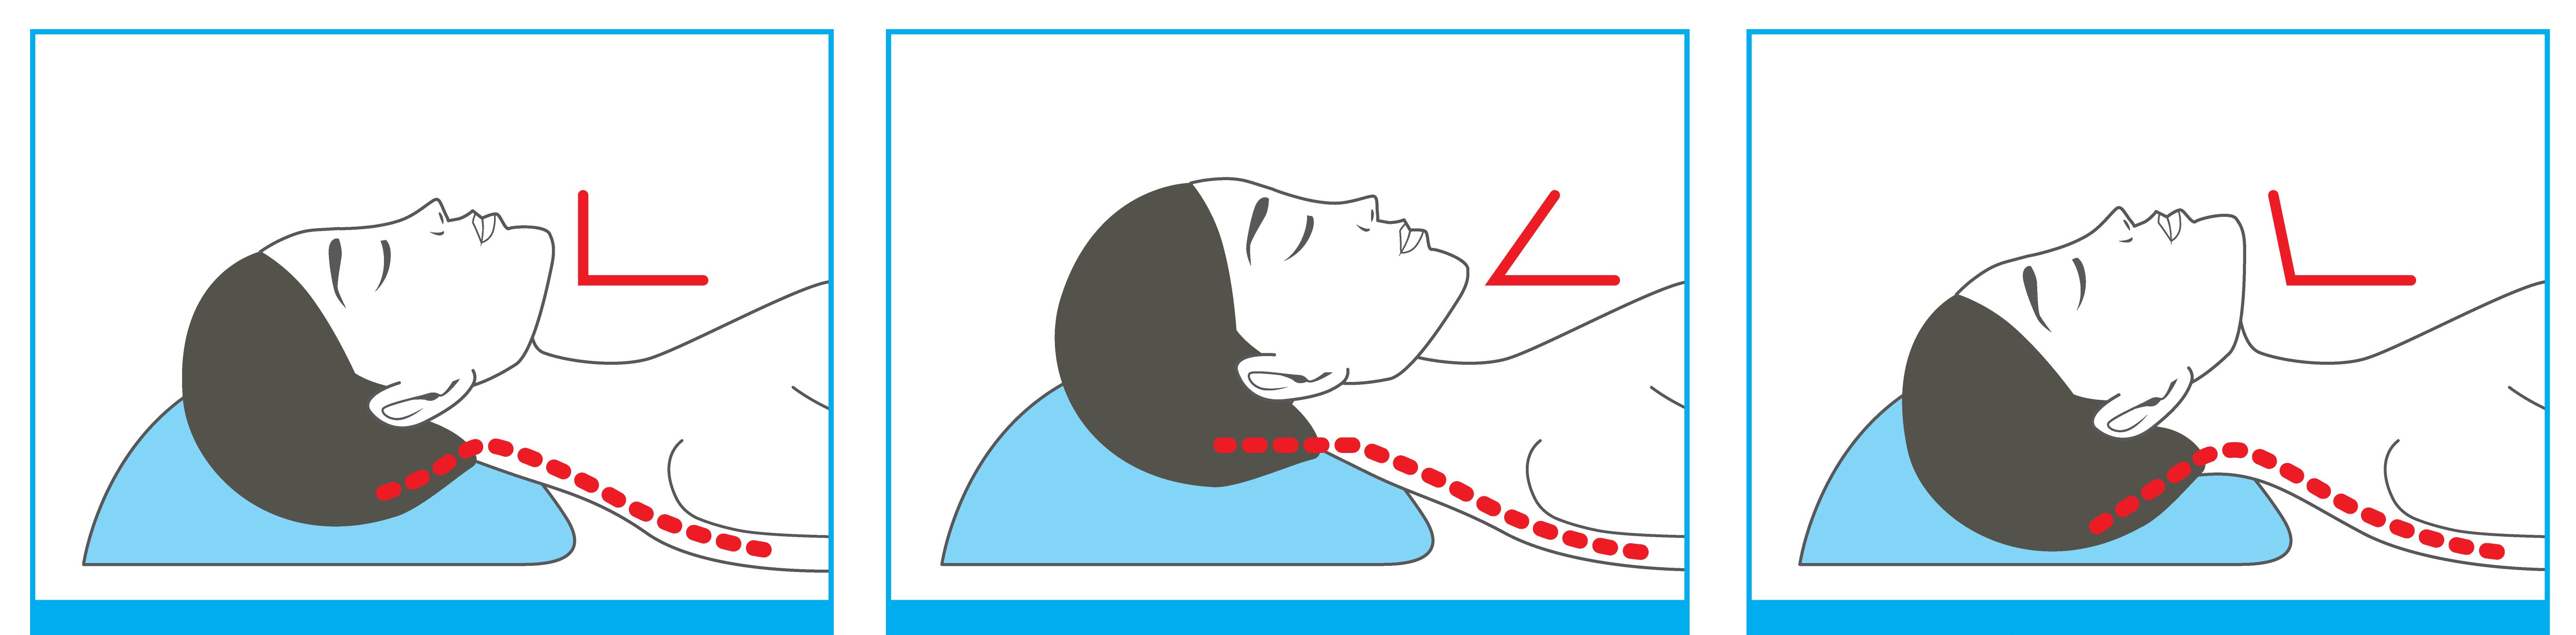 Как правильно спать при остеохондрозе шейного отдела позвоночника фото